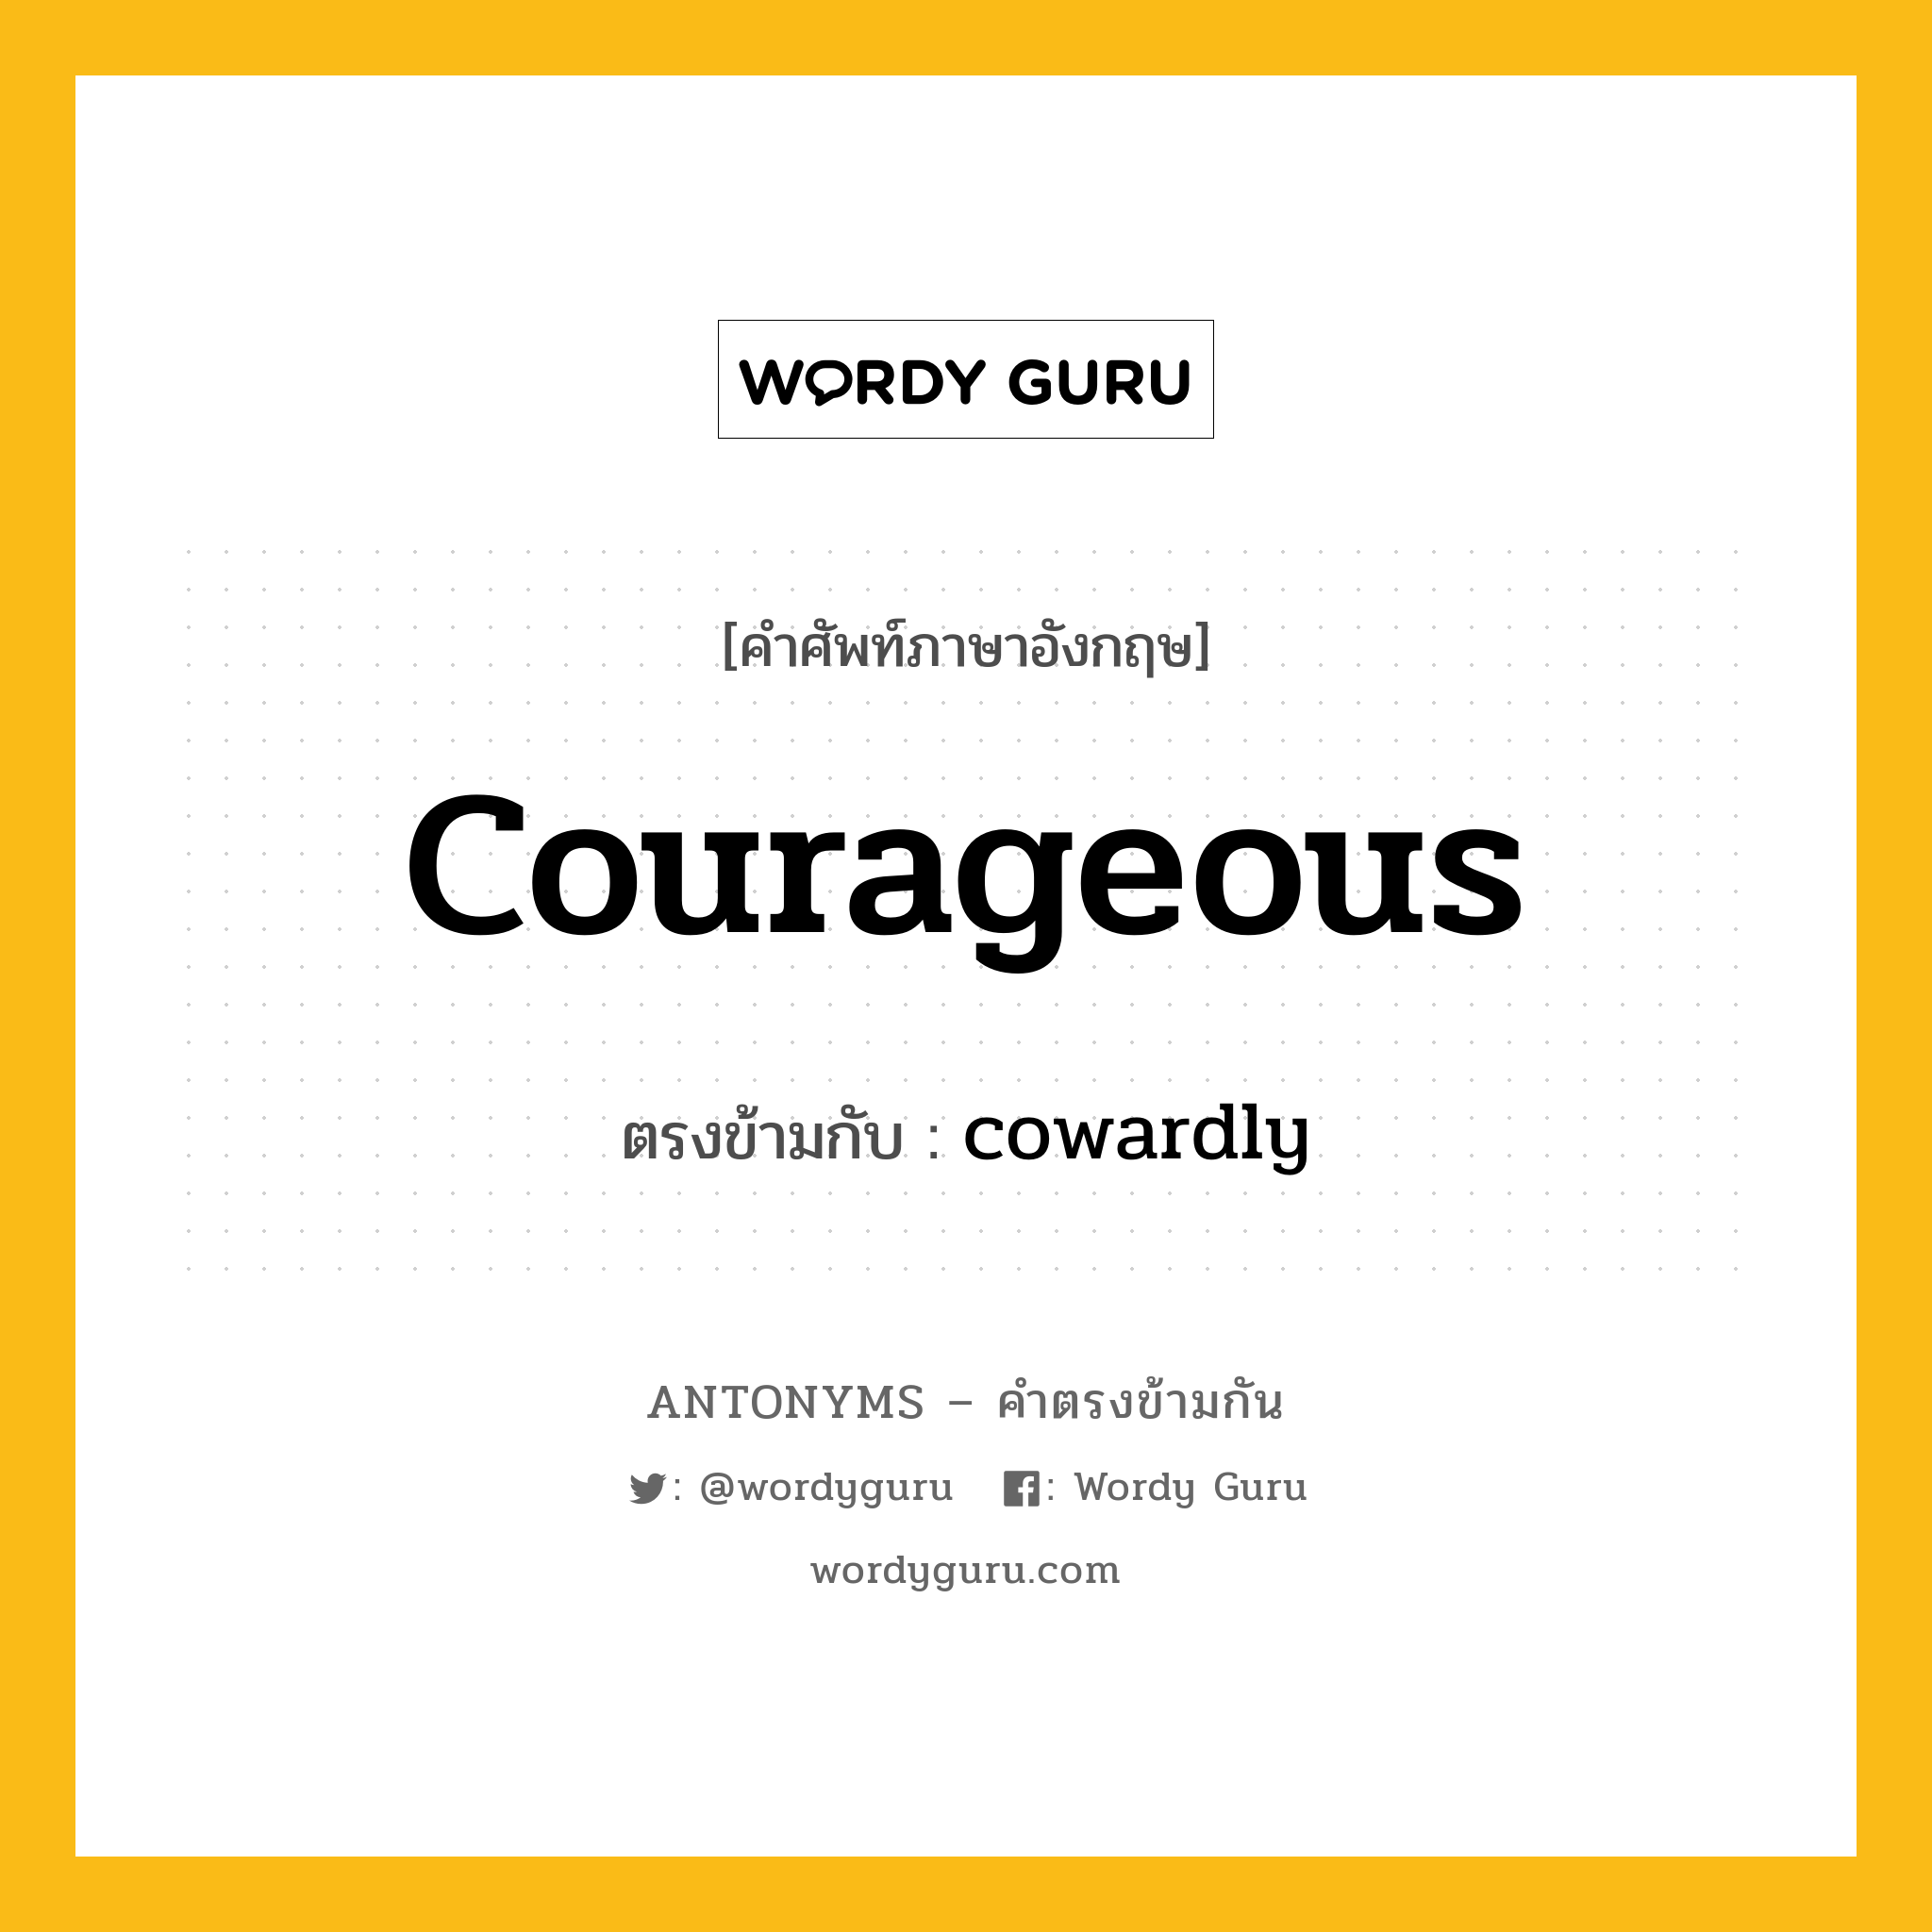 courageous เป็นคำตรงข้ามกับคำไหนบ้าง?, คำศัพท์ภาษาอังกฤษ courageous ตรงข้ามกับ cowardly หมวด cowardly